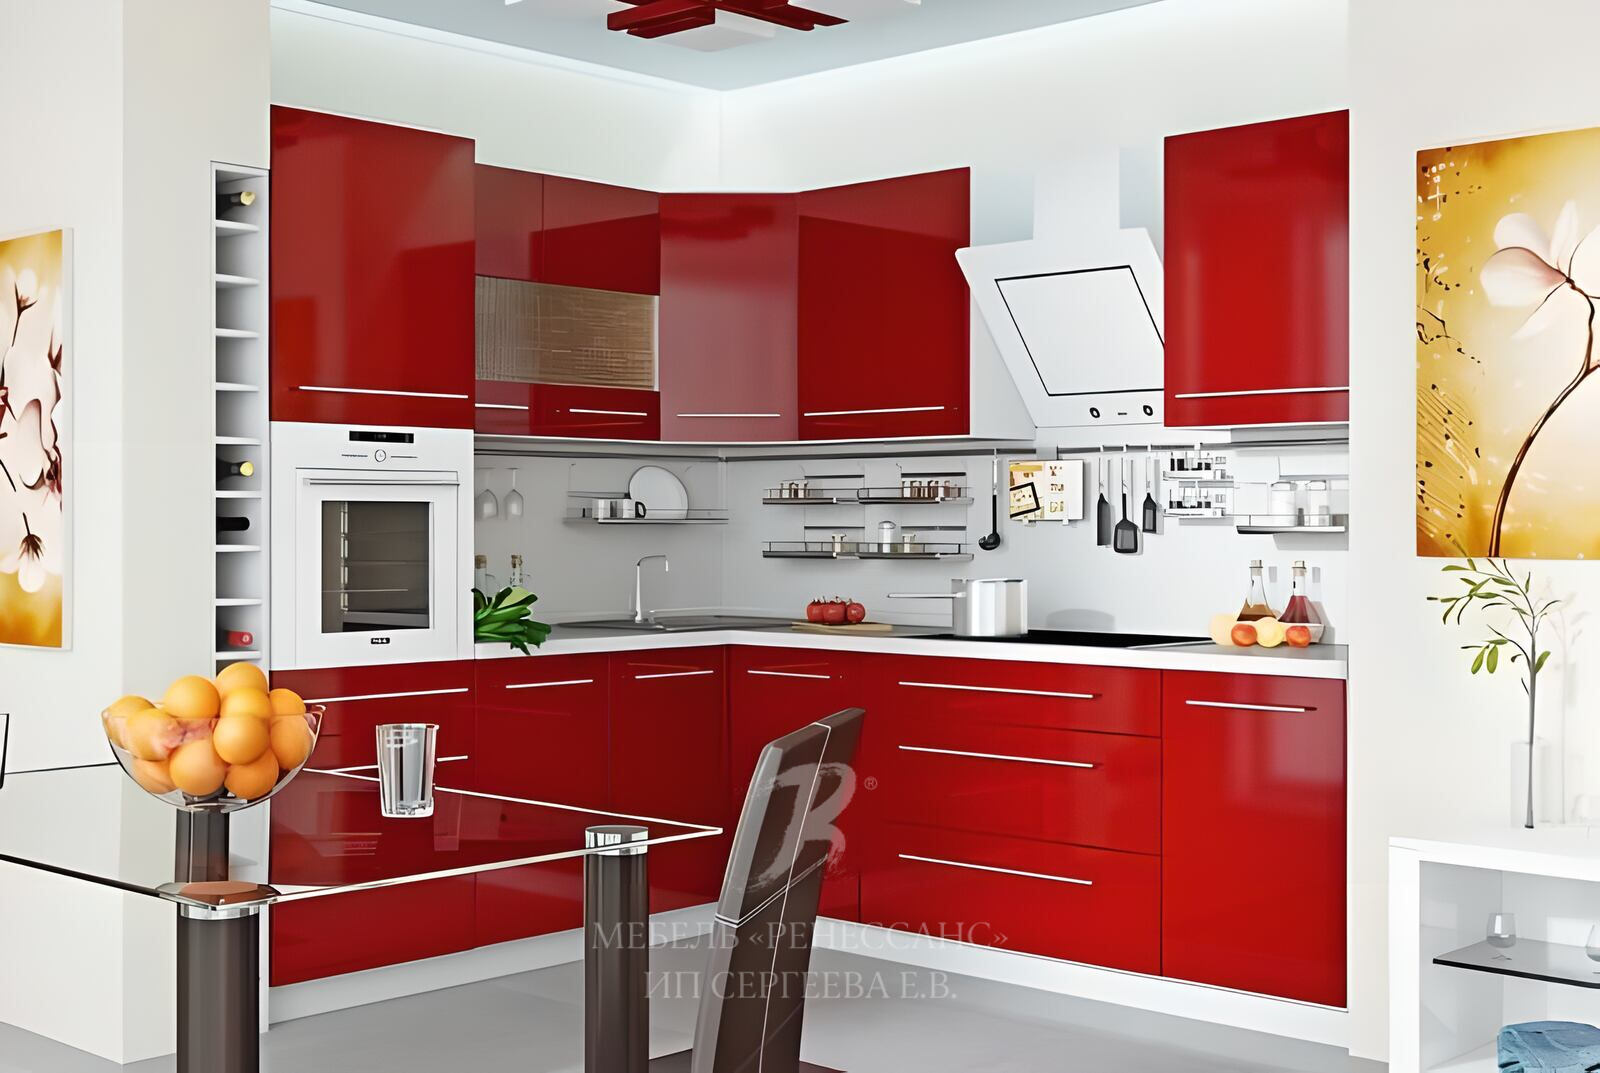 Купить кухню дизайн. Красивые кухонные гарнитуры. Красный кухонный гарнитур. Красные кухни. Интерьер угловой кухни.